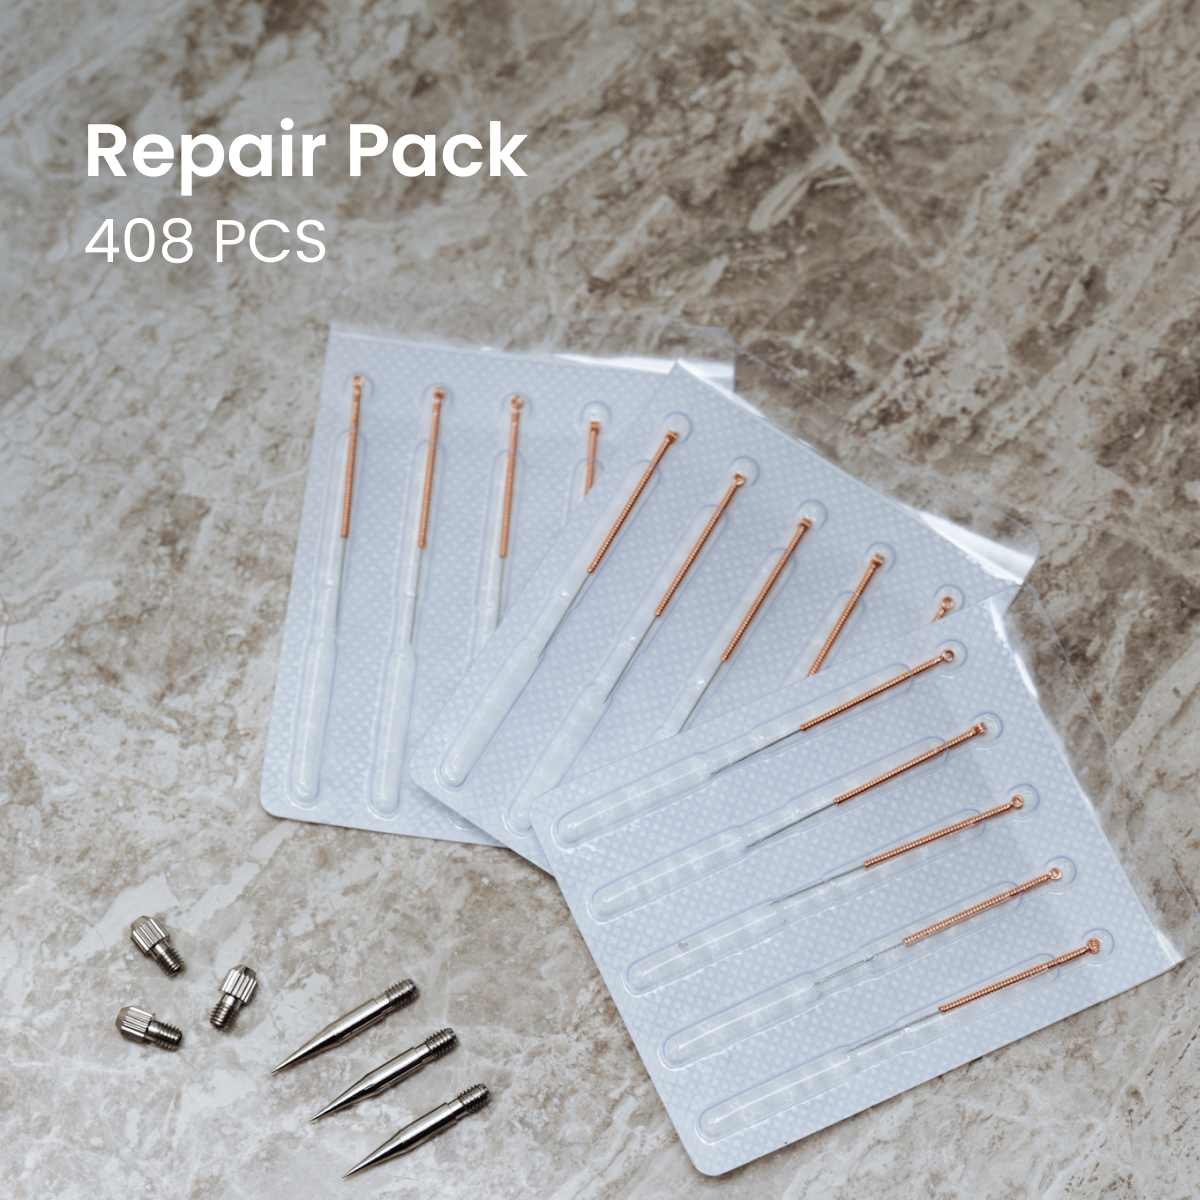 Bundle Deal: Beauty Spa Kit (10x) + Repair Pack (408pcs) + Free Guidebook